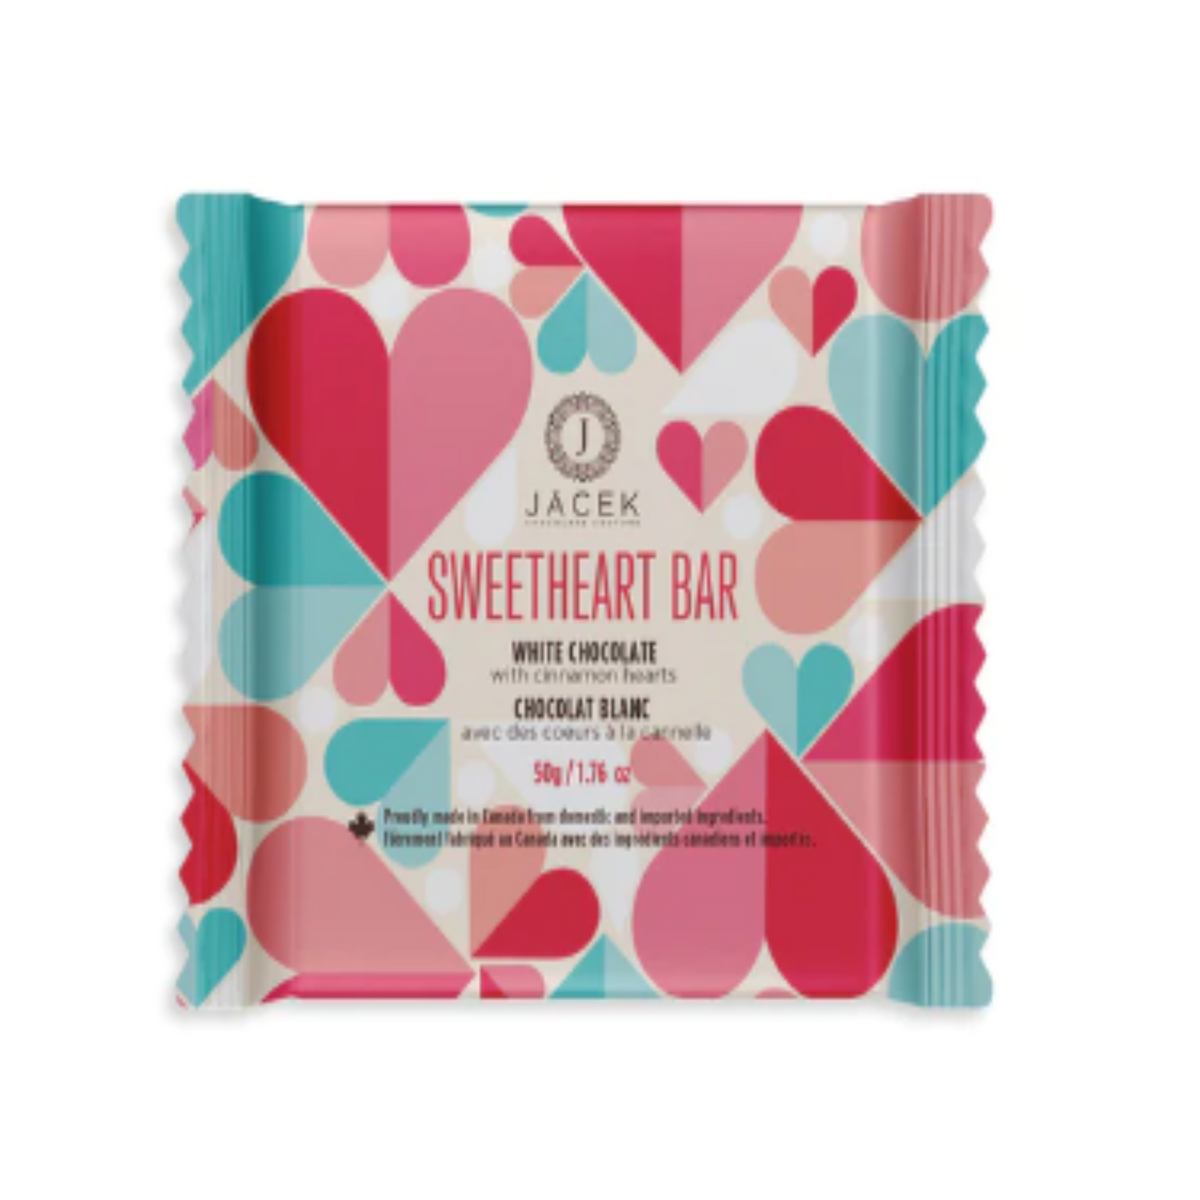 Sweetheart Bar